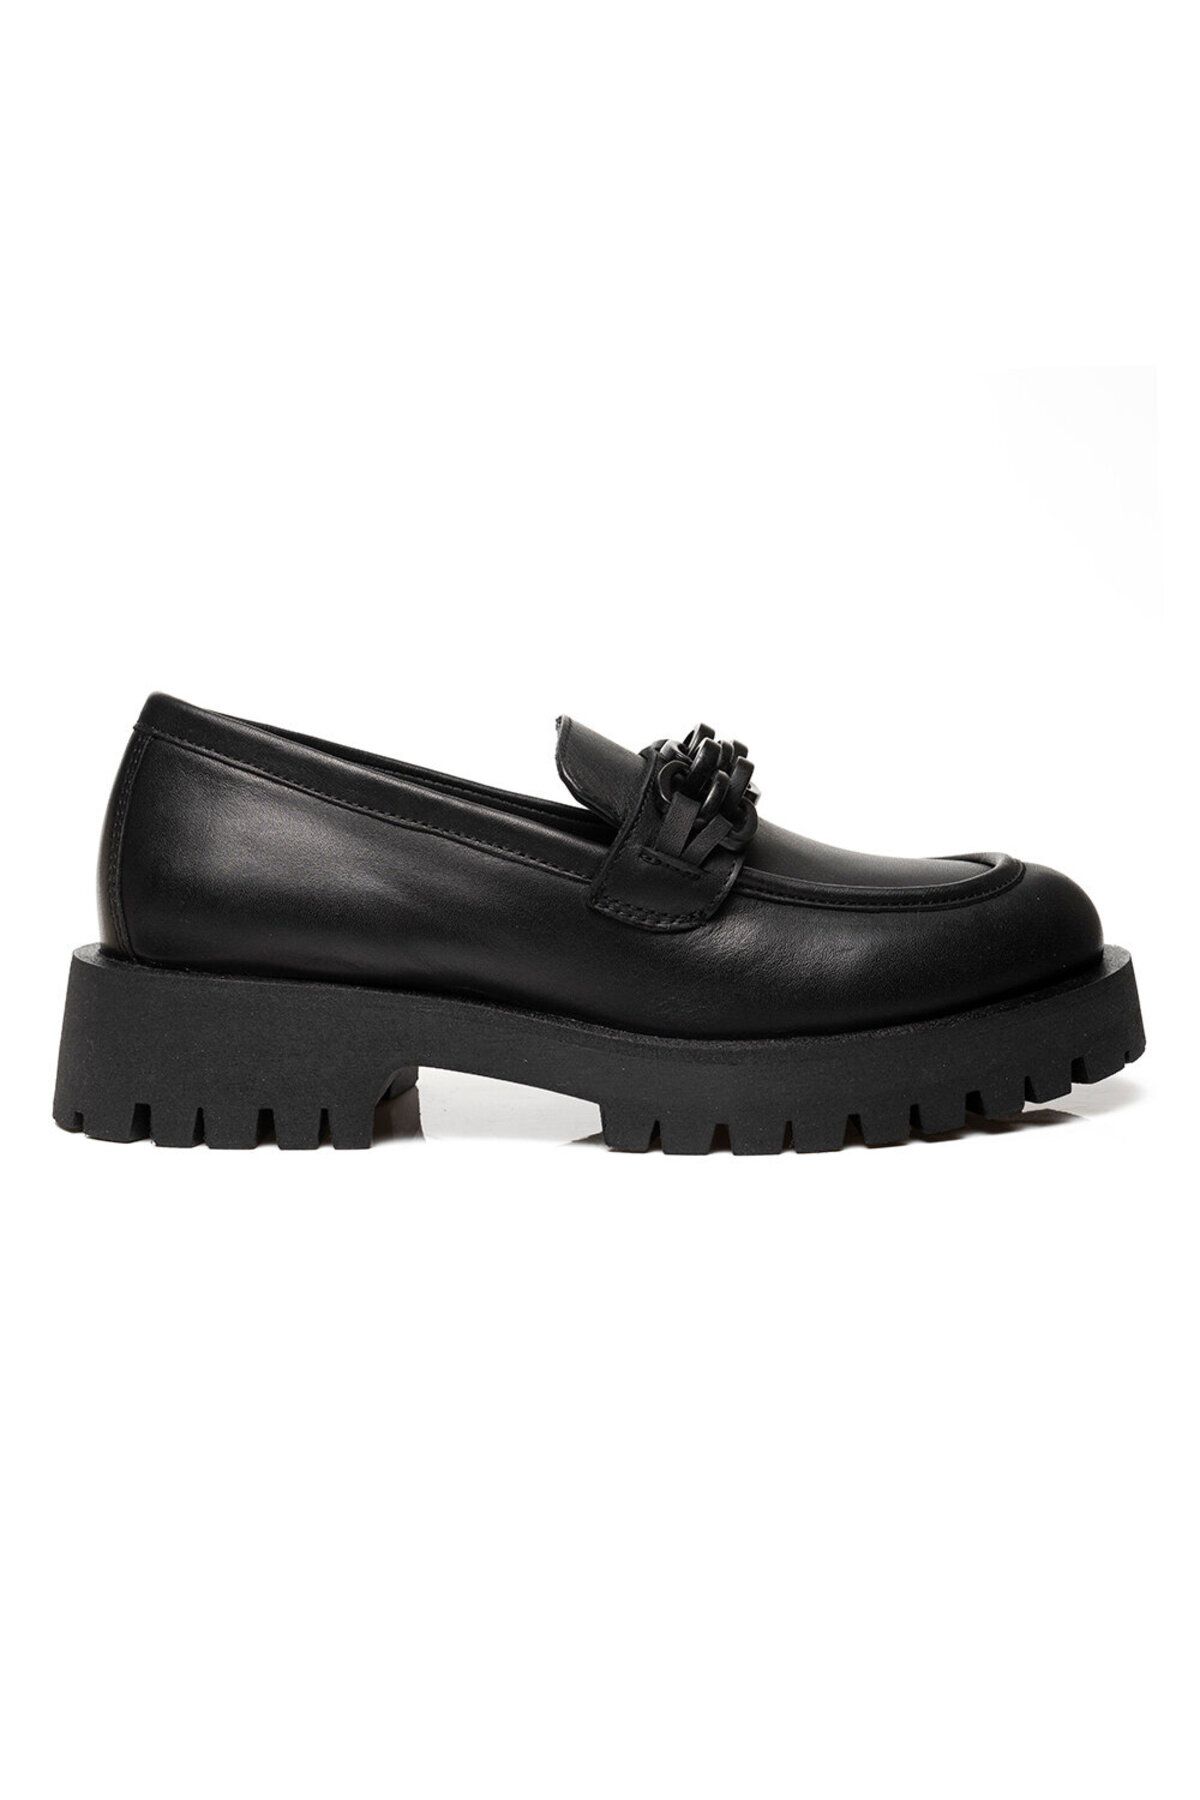 Greyder Kadın Siyah Deri Hakiki Deri Loafer Ayakkabı 3k2ua31005